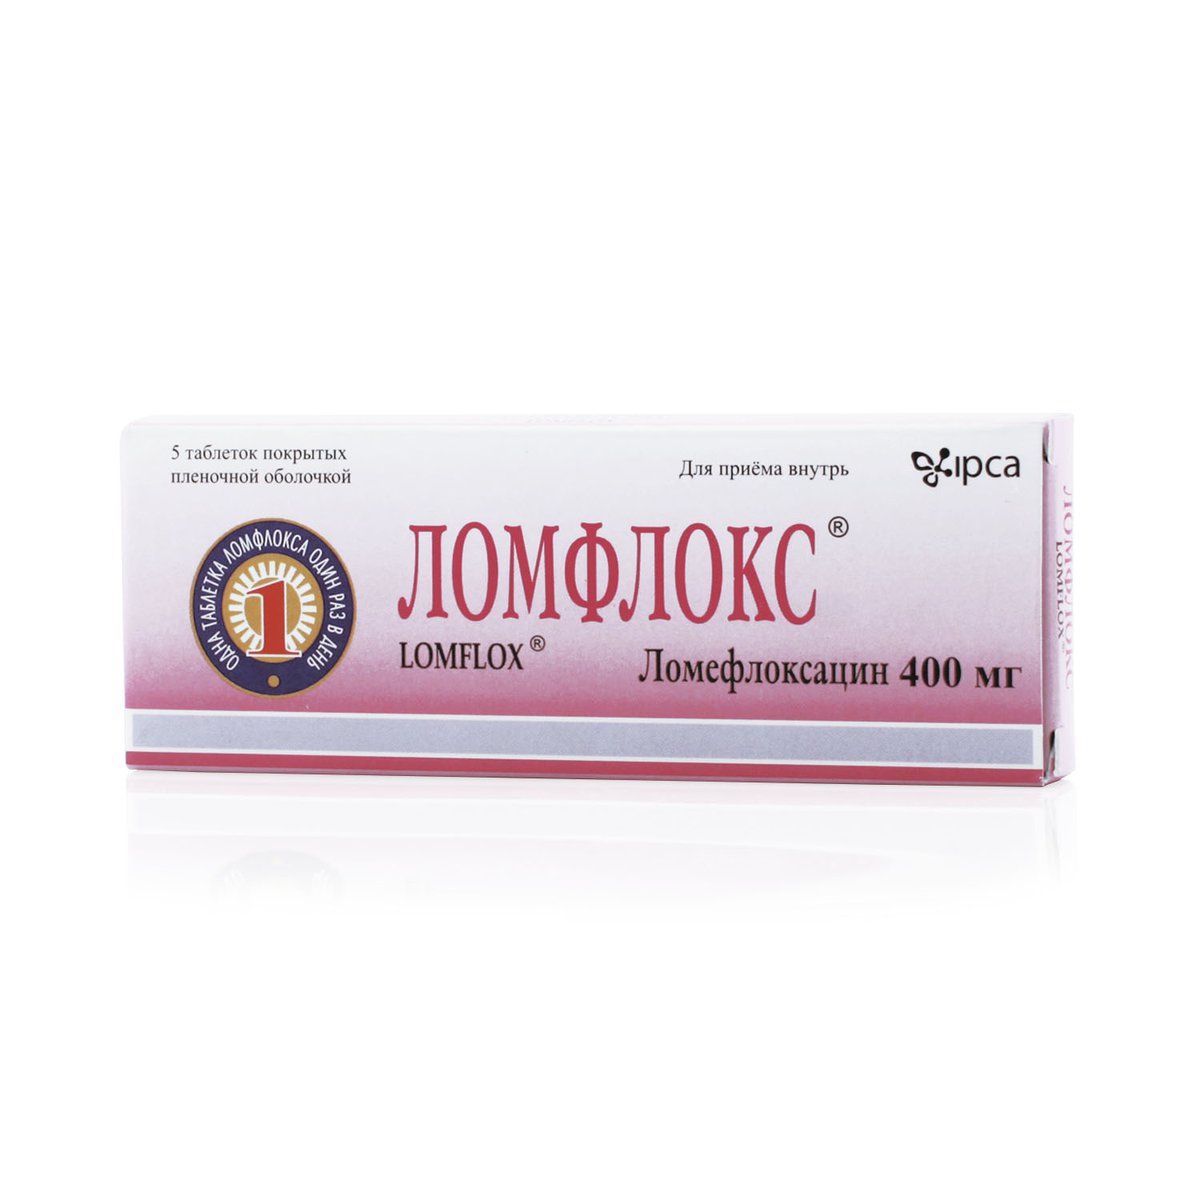 Ломфлокс (таблетки, 5 шт, 400 мг) - цена,  онлайн  .